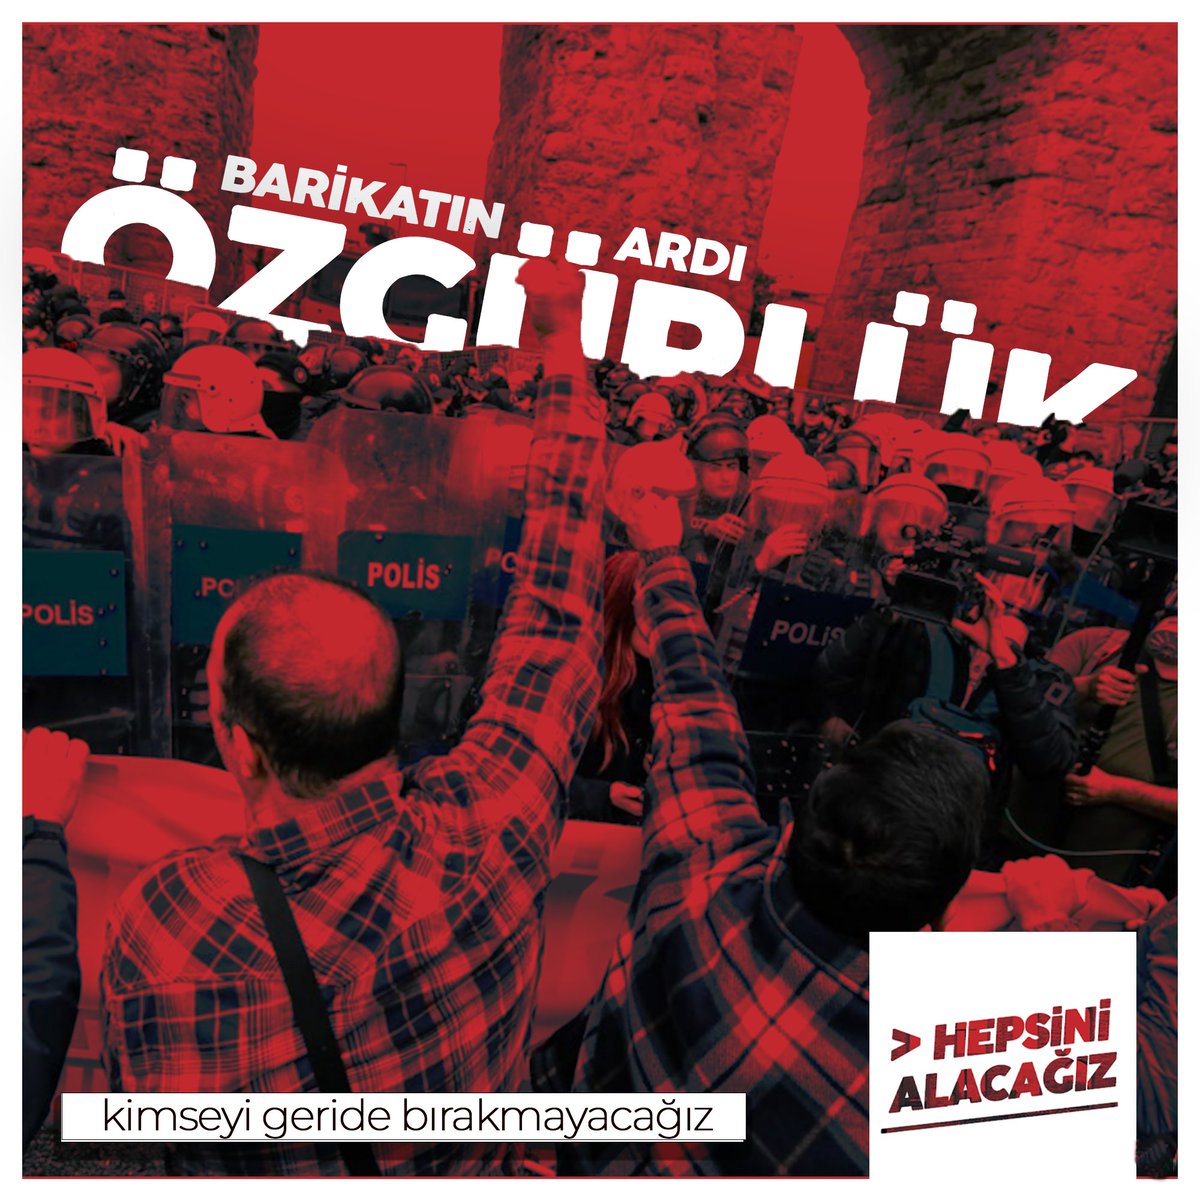 ⚡️ Birlikte yürüdük, birlikte kazanacağız: Barikatın ardı eşitlik, adalet, özgürlük! 📢 1 Mayıs'ı, Taksim'i, bütün arkadaşlarımızı almak için buluşuyoruz: 📍 İstanbul Kadıköy Rıhtım 18.30 #HepsiniAlacağız